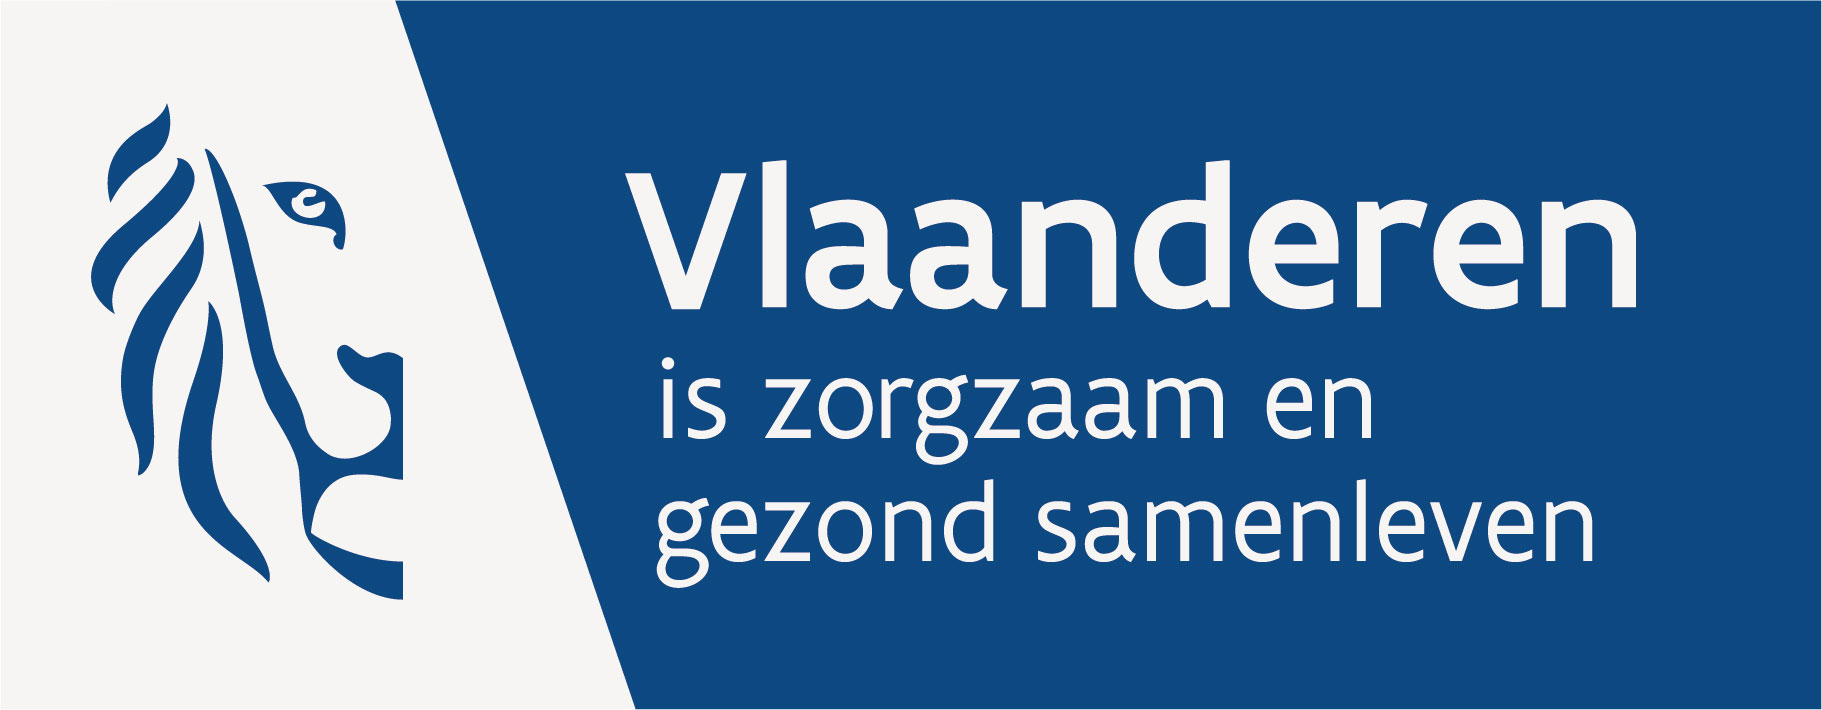 Zorg - Vlaanderen